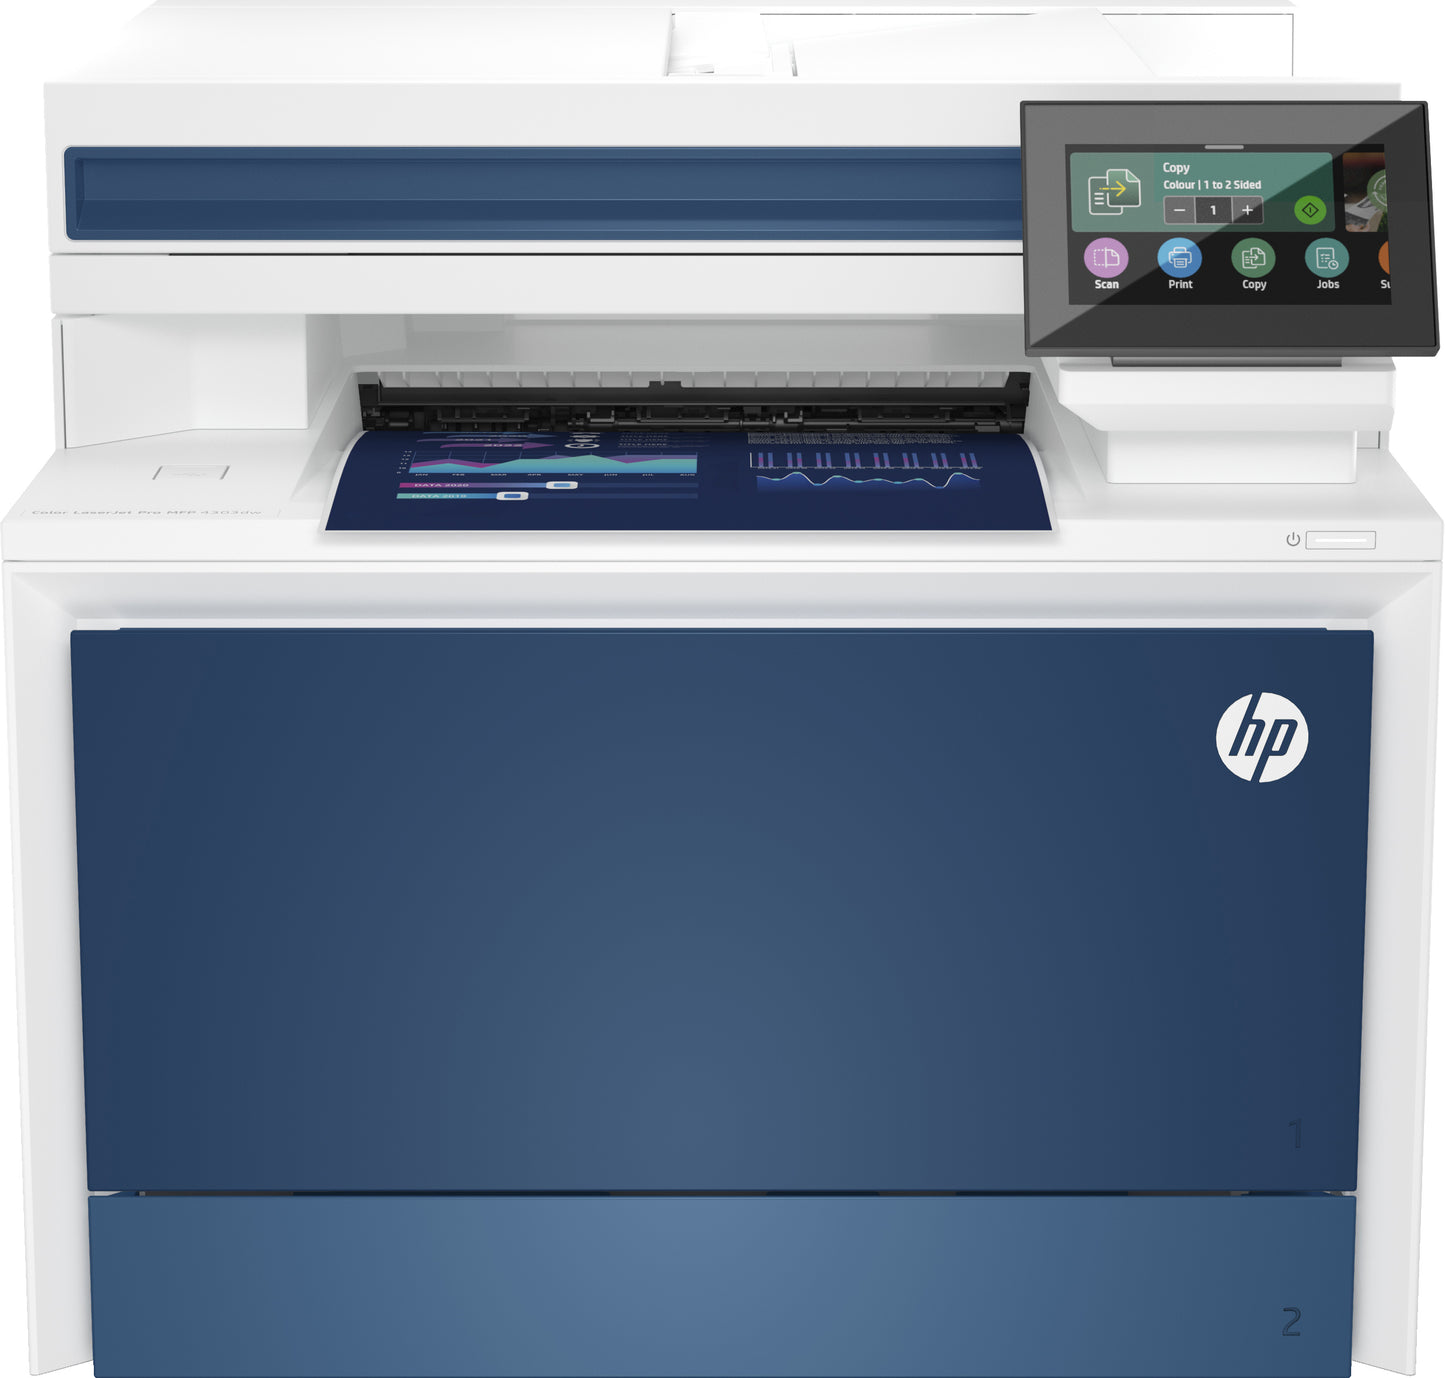 HP LaserJet Pro 4303dw  Multifuncional láser a color  Remplaza a M479dw (W1A77A)  Conexión Wi-Fi, Bluetooth y ethernet  3 a 10 usuarios  Escáner de cama plana y ADF  Dúplex automático